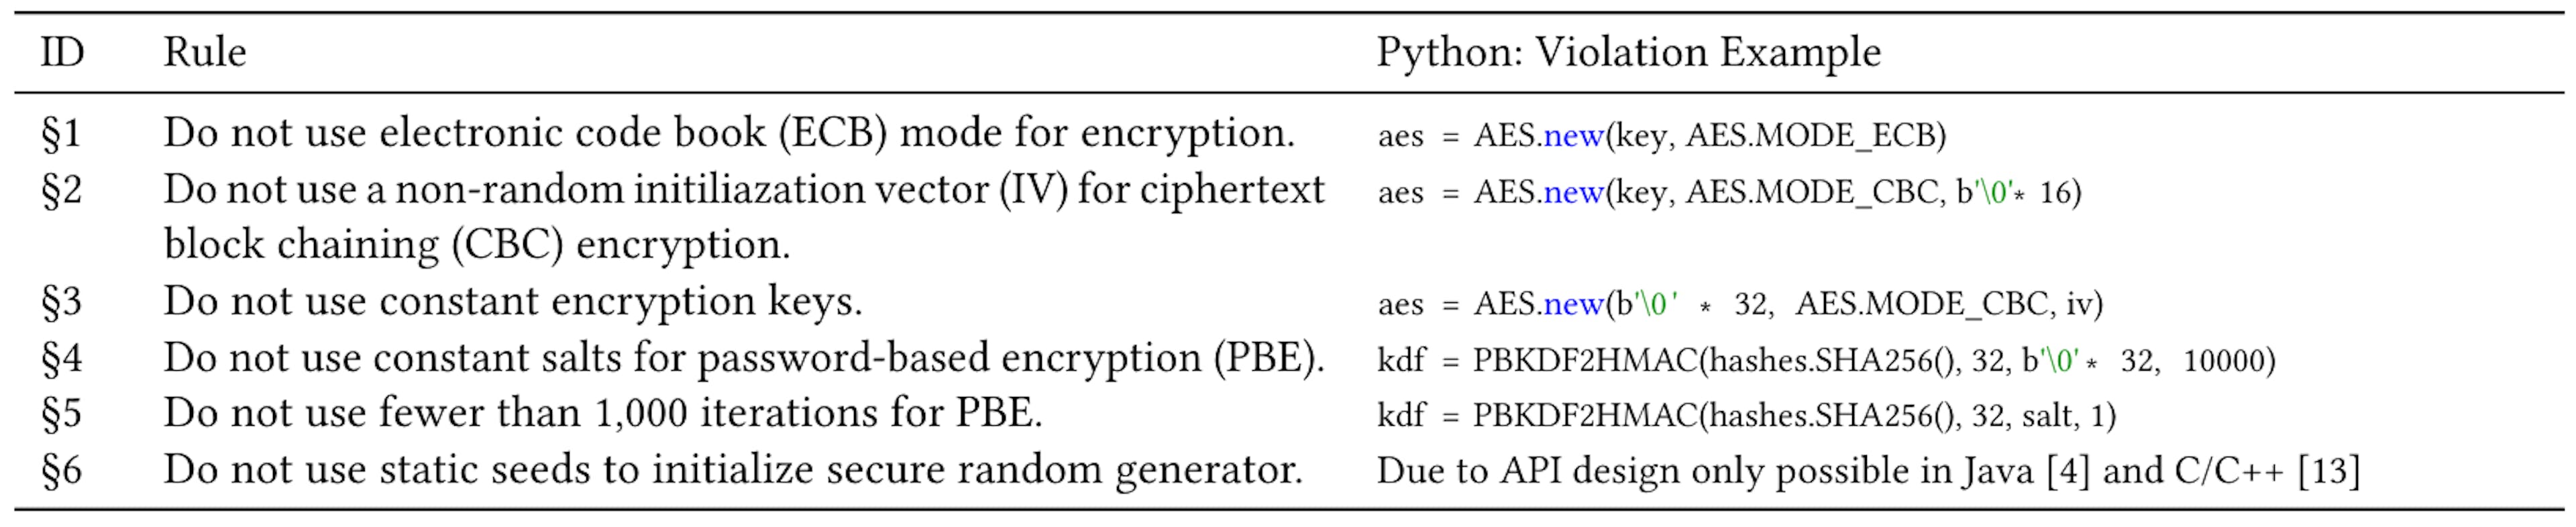 표 1: Java 및 C에서 일반적으로 논의되는 6가지 암호화 오용[4, 13]과 Python의 위반 사례.